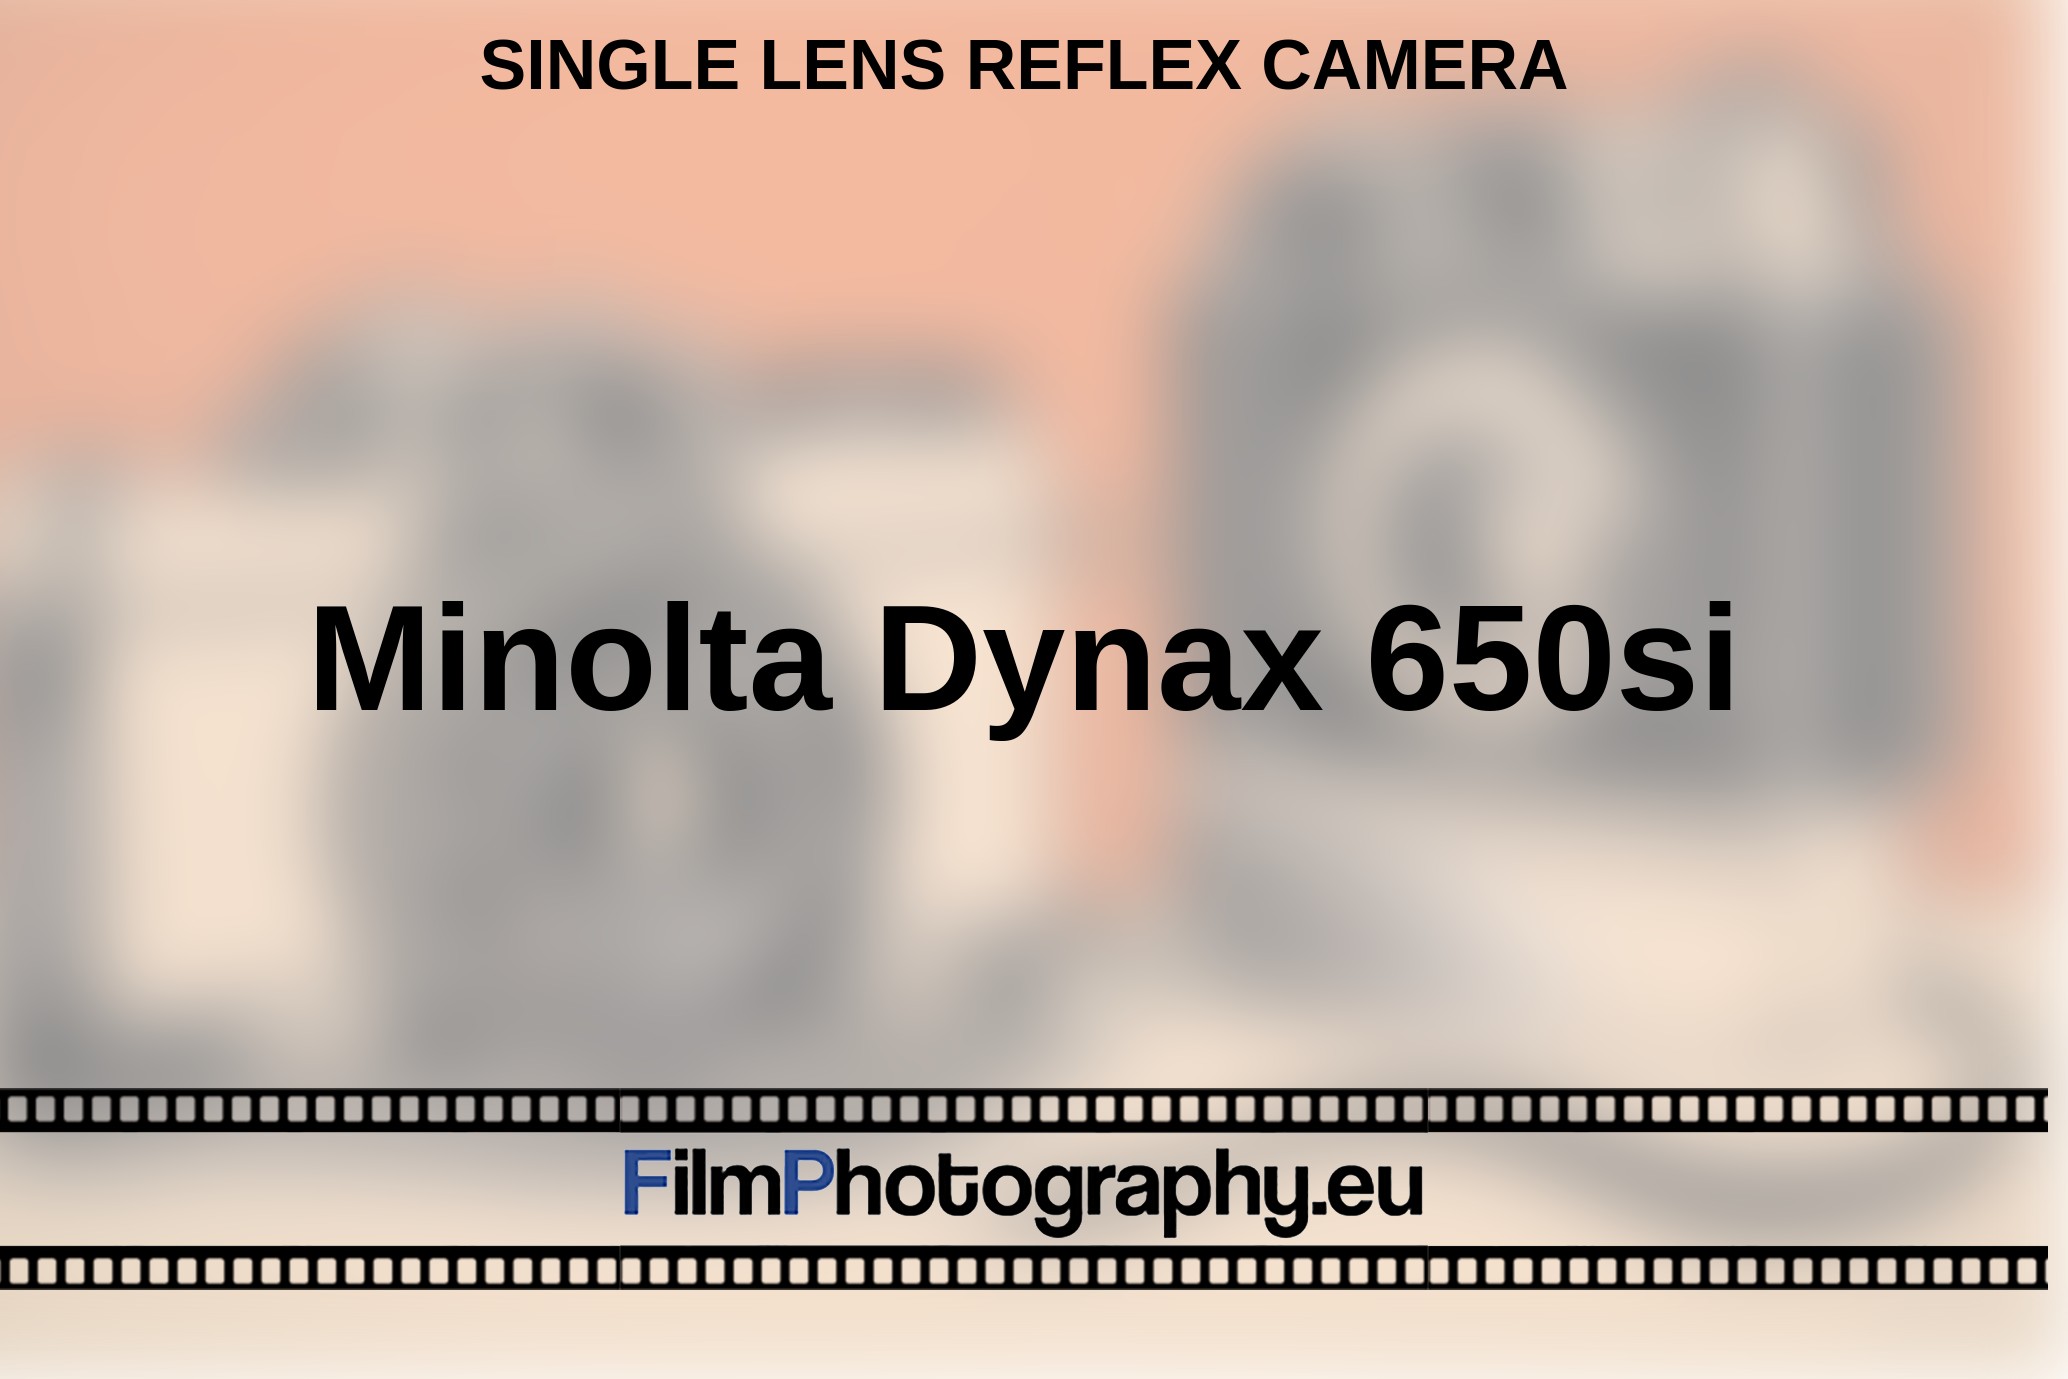 Minolta-Dynax-650si-single-lens-reflex-camera-bnv.jpg